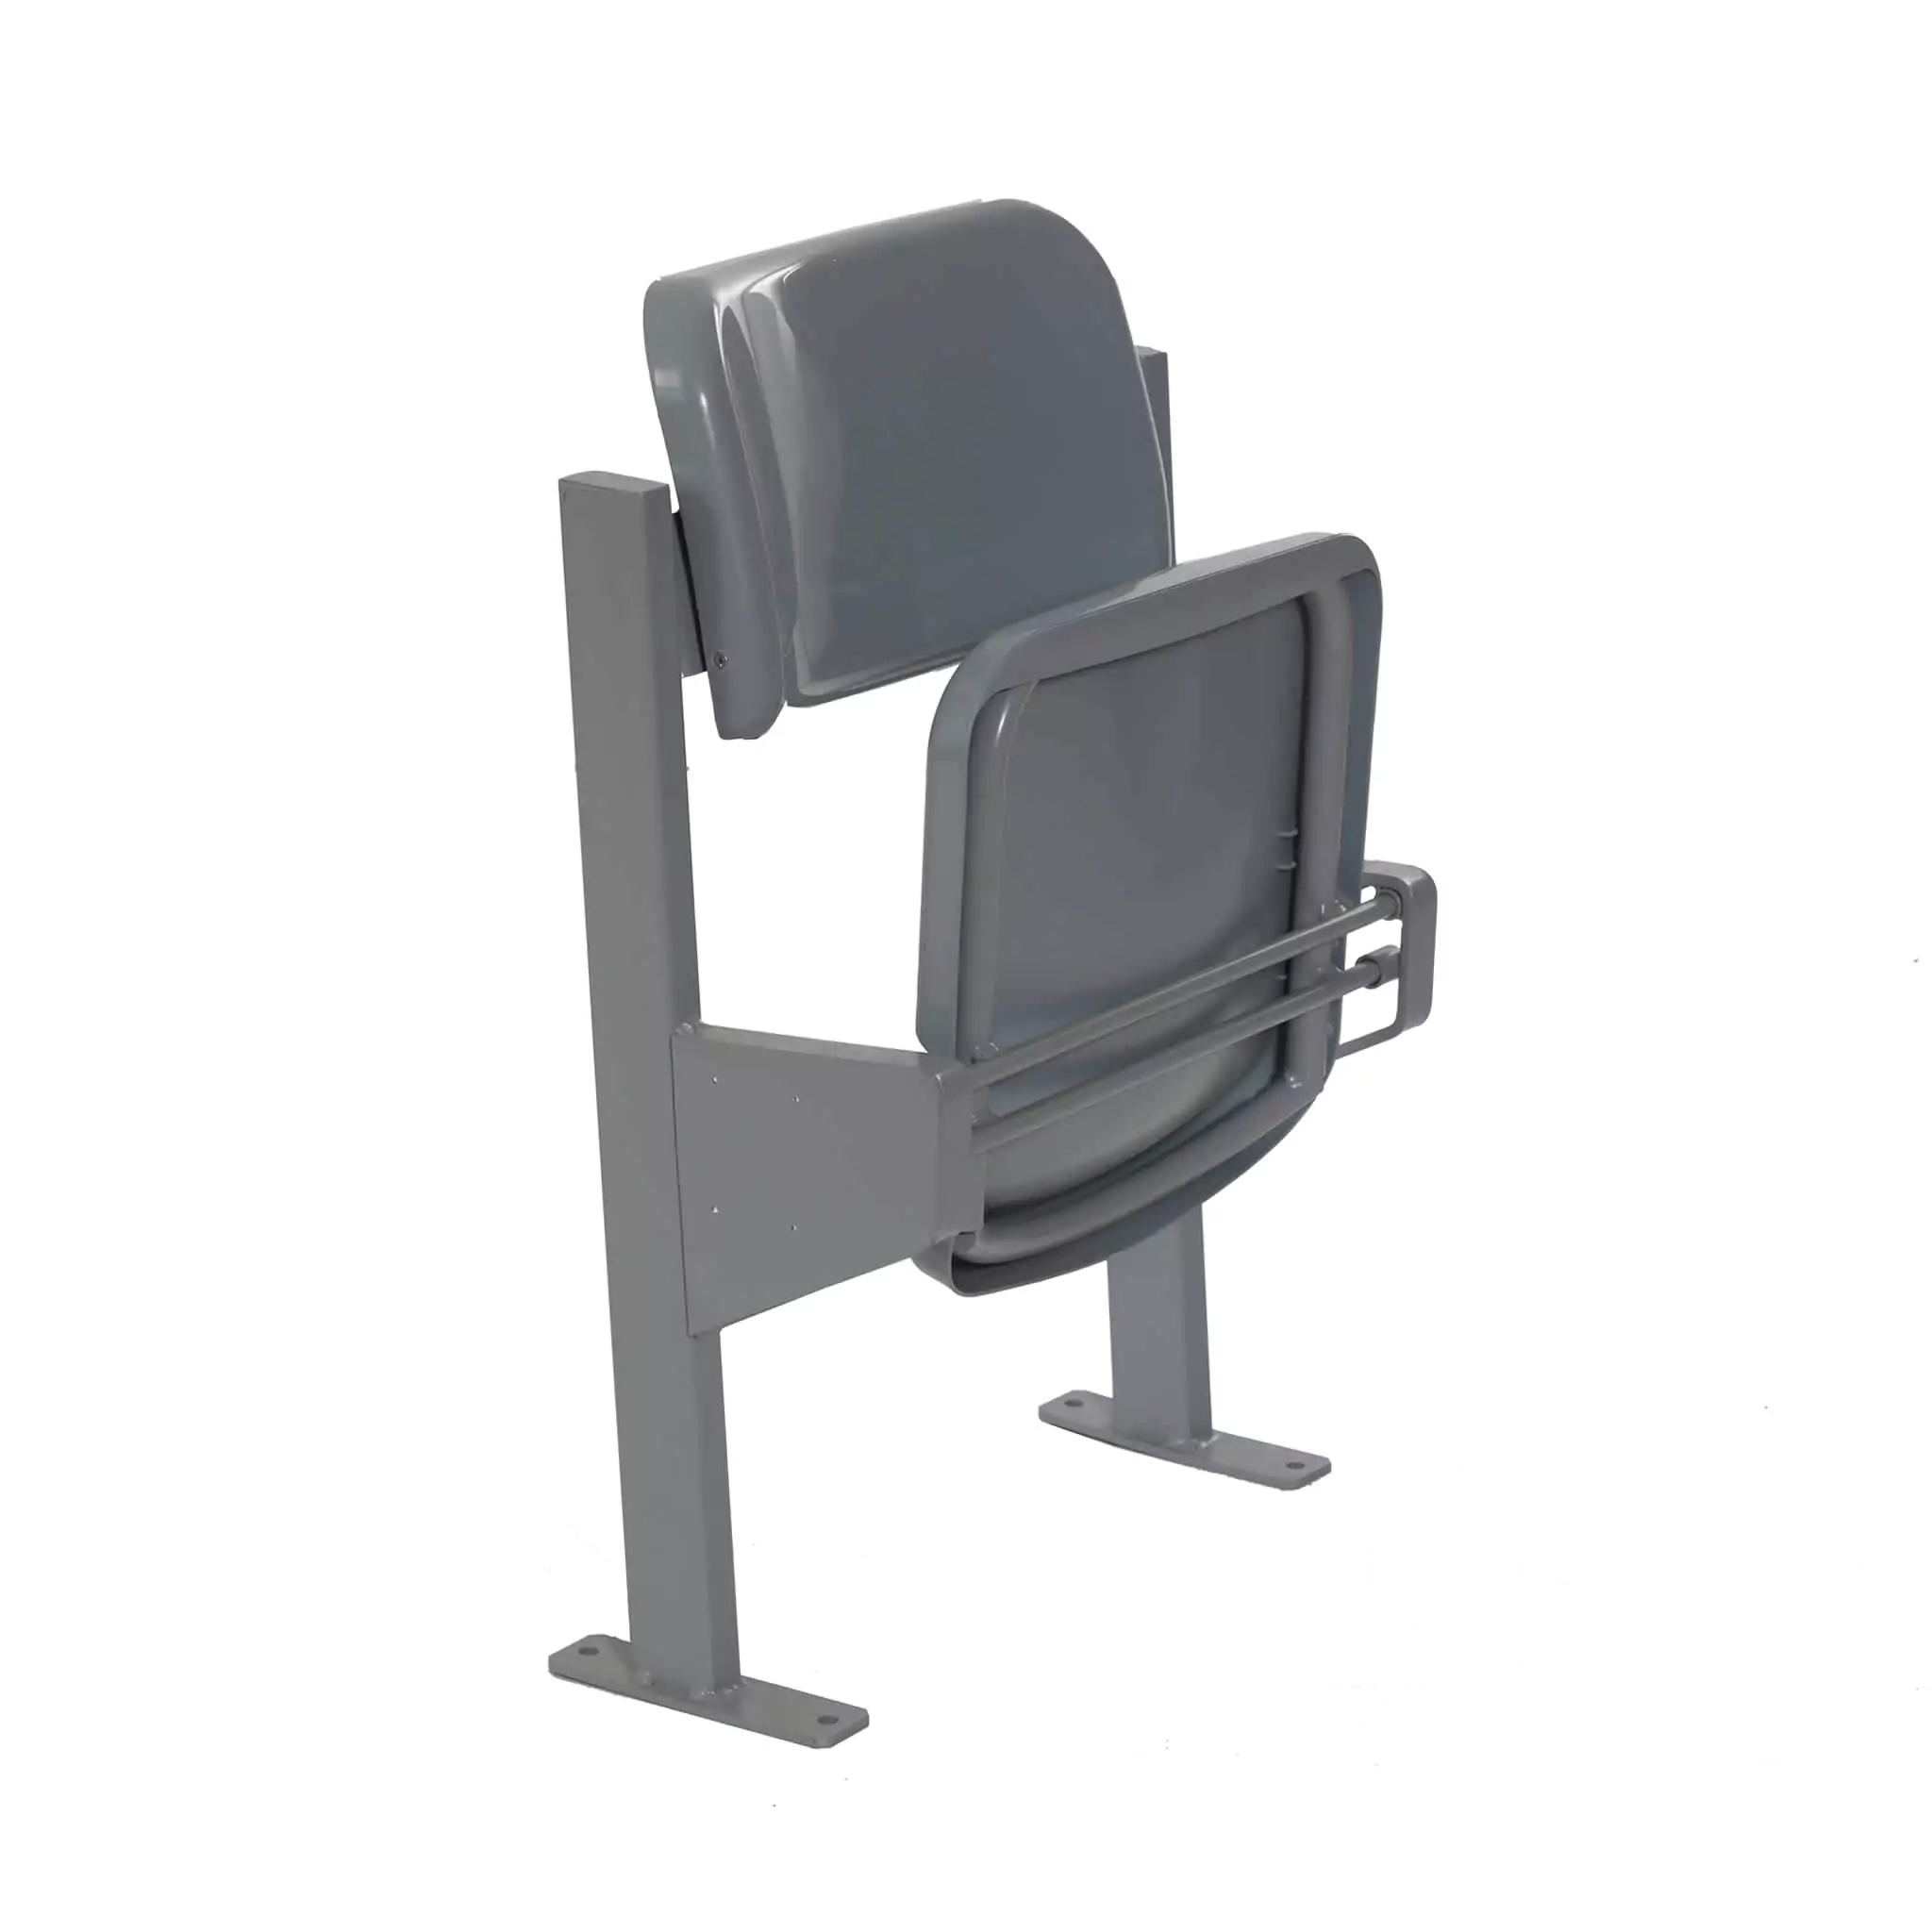 Simko Seating Products Folding Stadium Seat Azurit 04